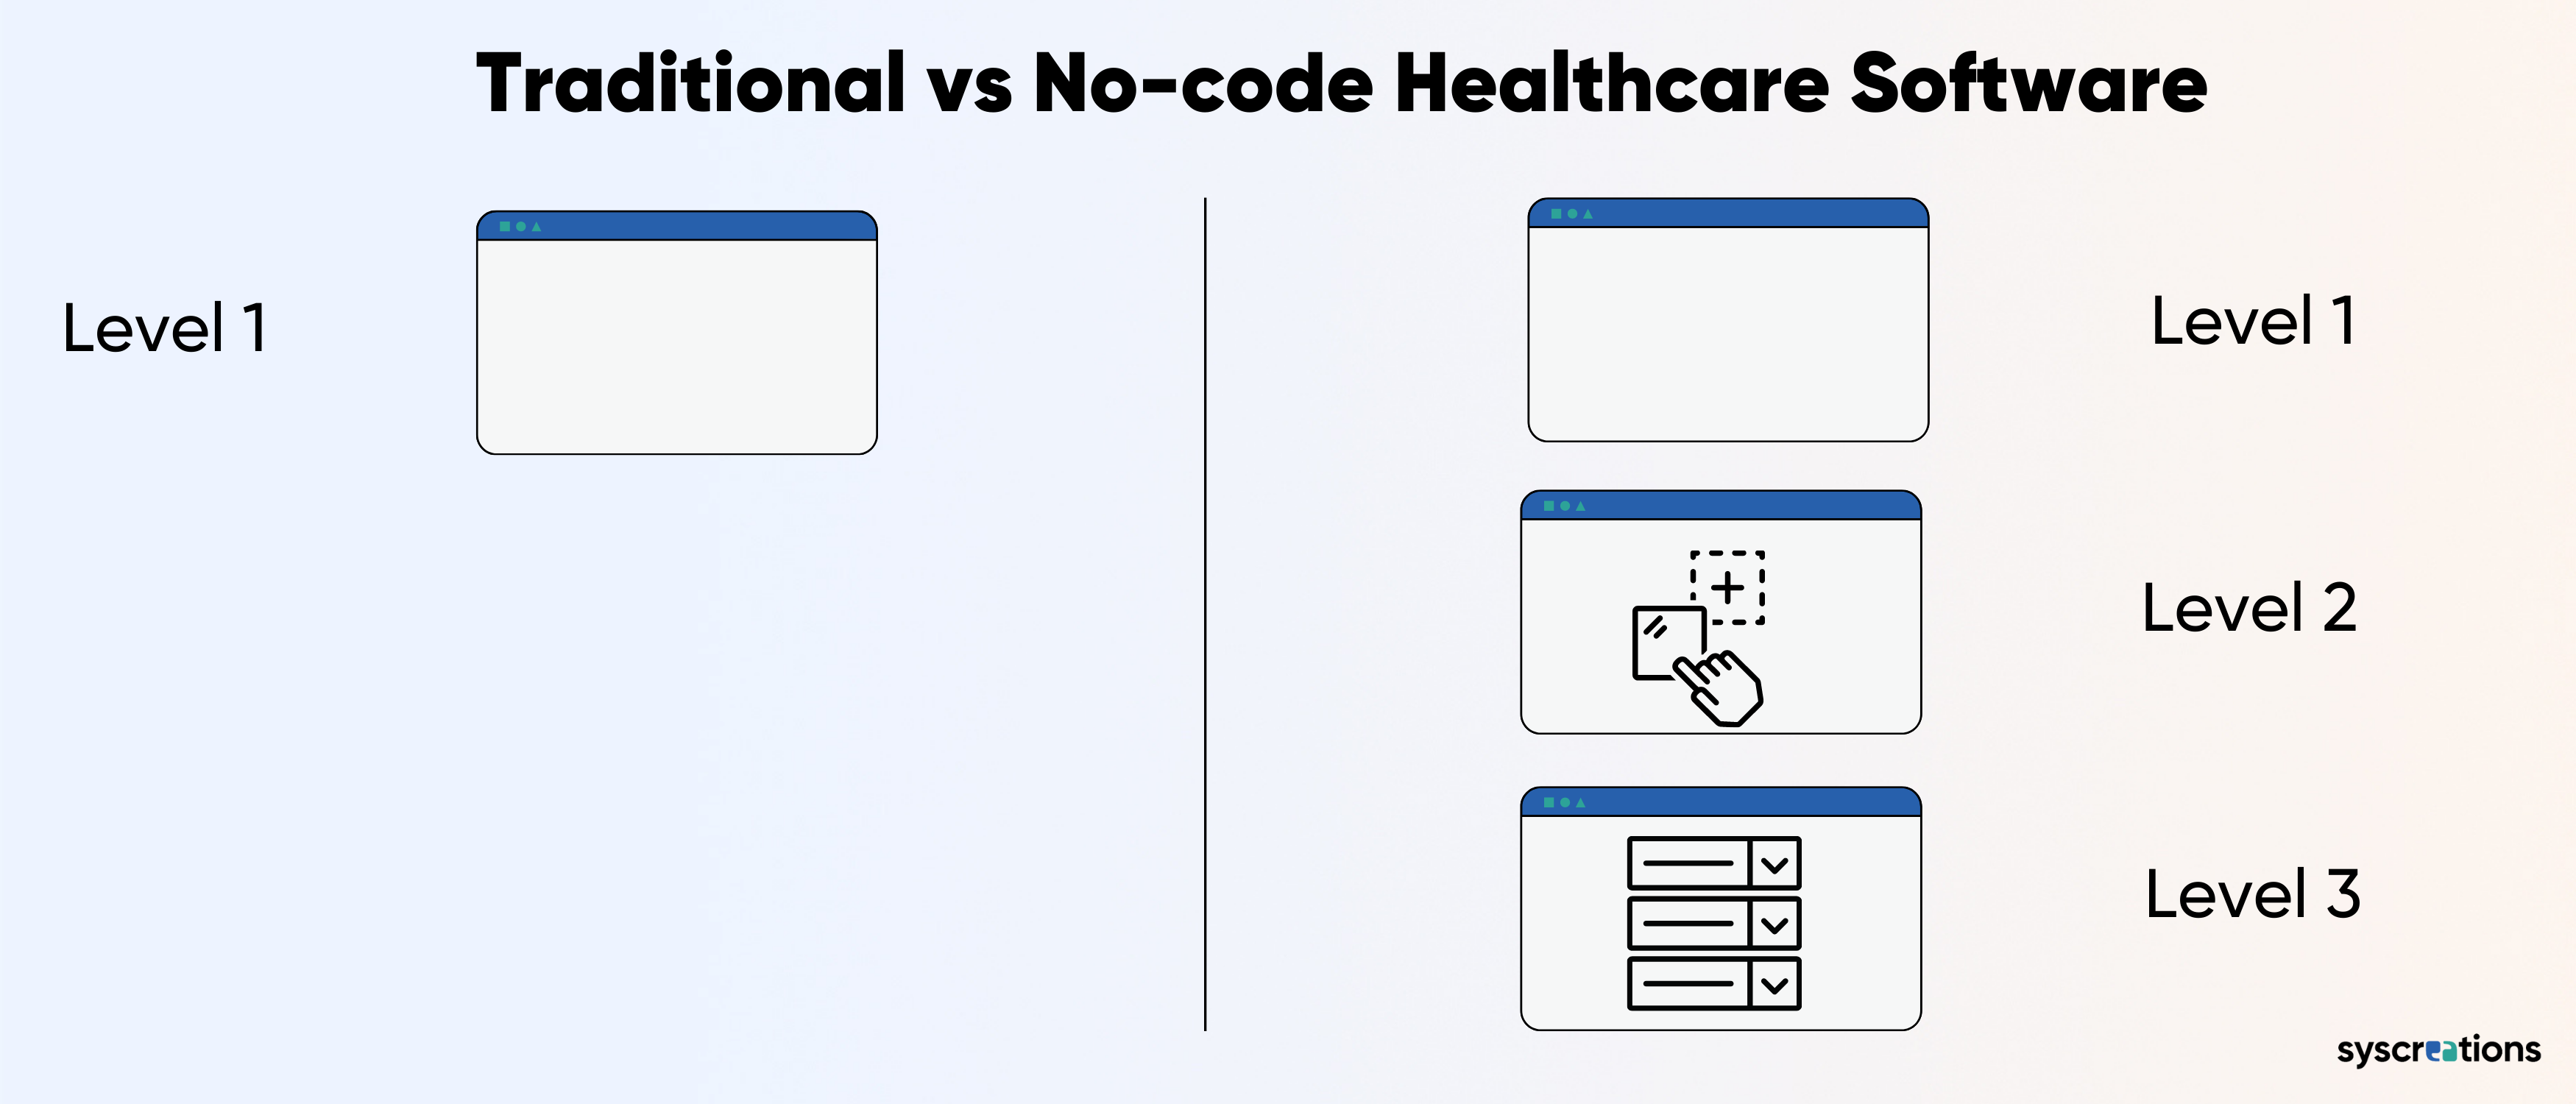 No-code healthcare platform vs traditional one